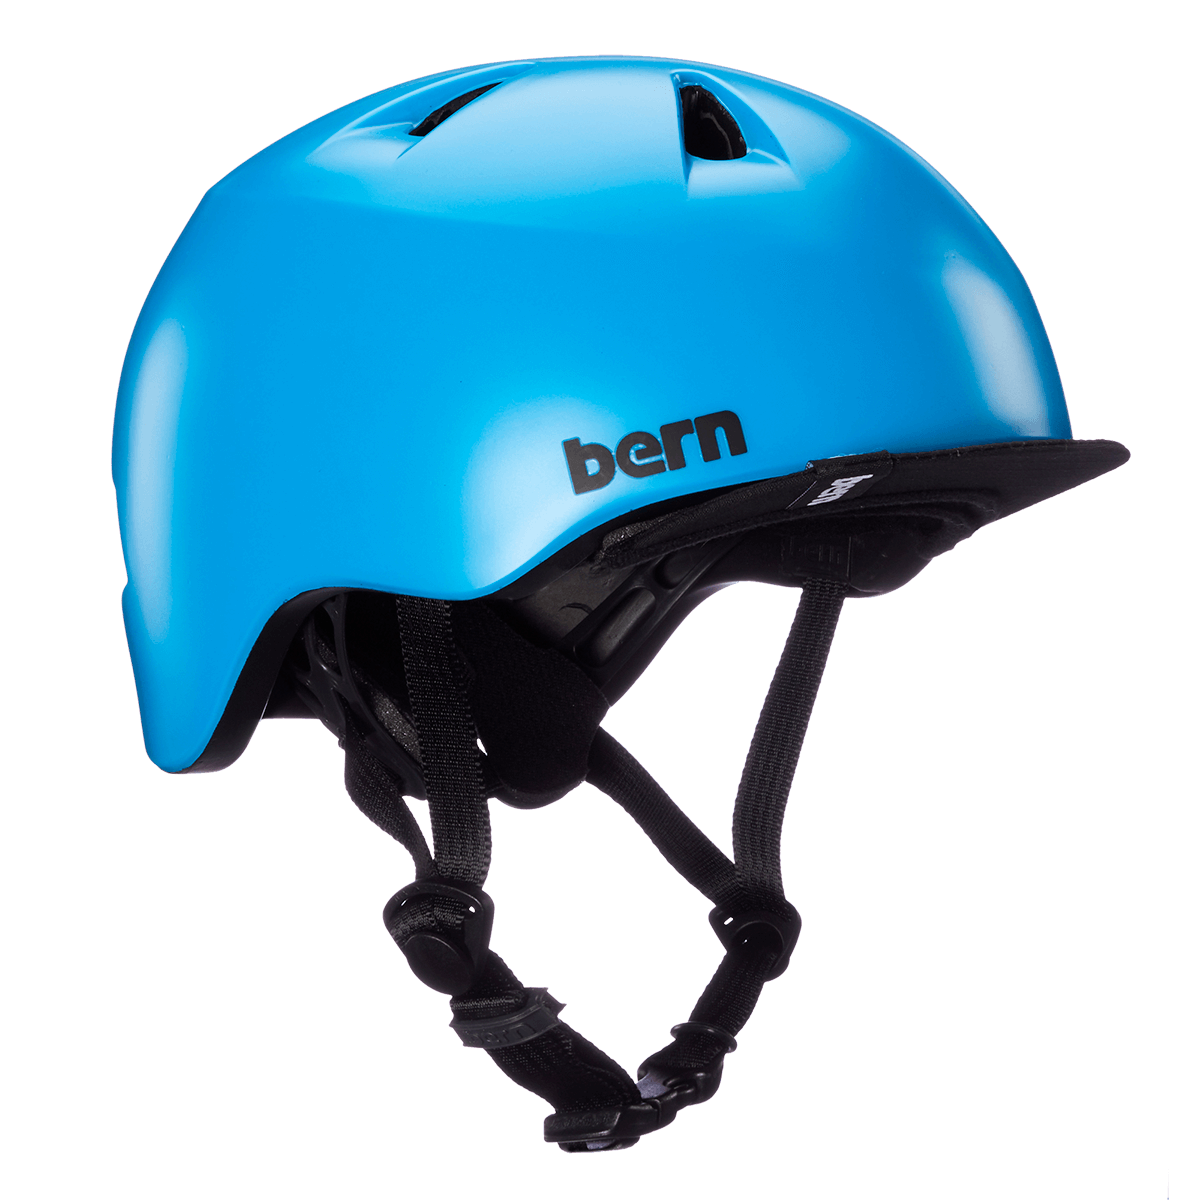 Bern Tigre Youth Bike Helmet